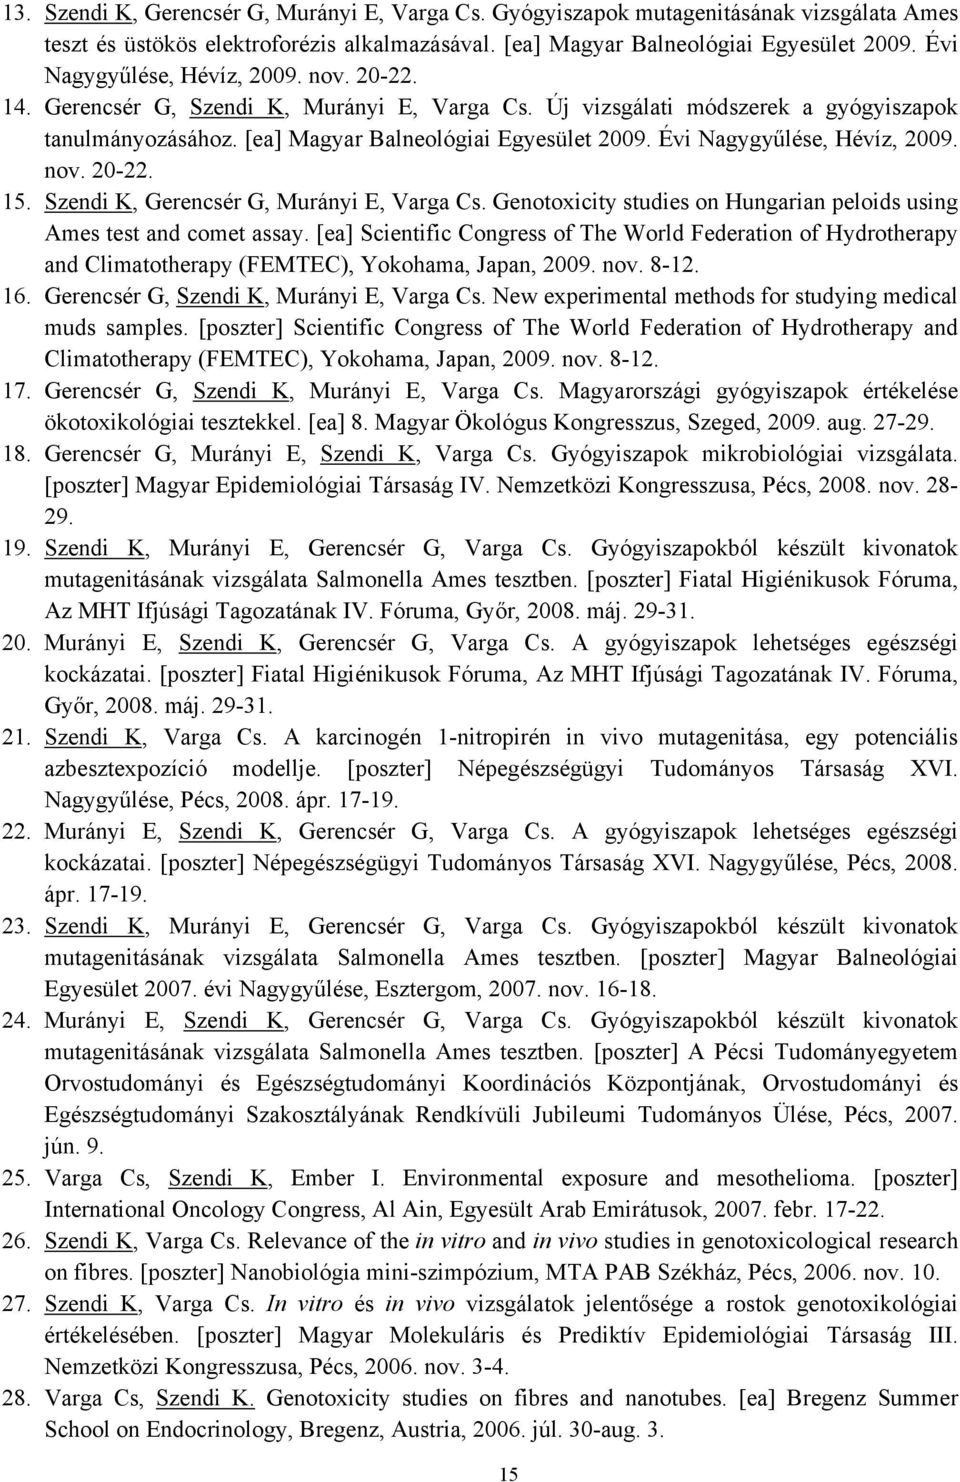 Évi Nagygyűlése, Hévíz, 2009. nov. 20-22. 15. Szendi K, Gerencsér G, Murányi E, Varga Cs. Genotoxicity studies on Hungarian peloids using Ames test and comet assay.